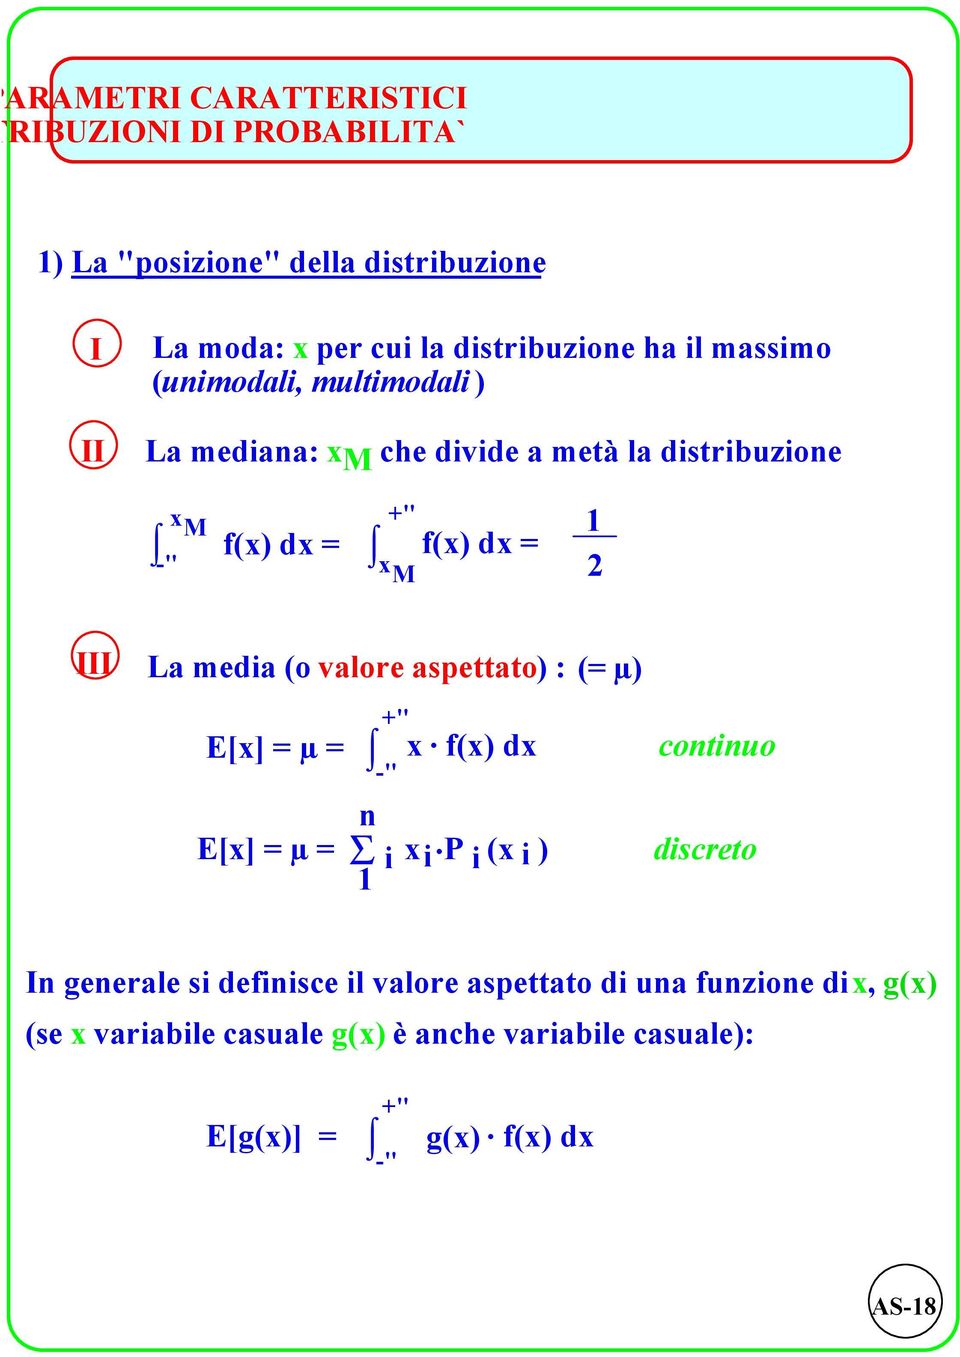 x M III La media (o valore aspettato) : E[x] µ +" -" x. f(x) dx E[x] µ S i x i.